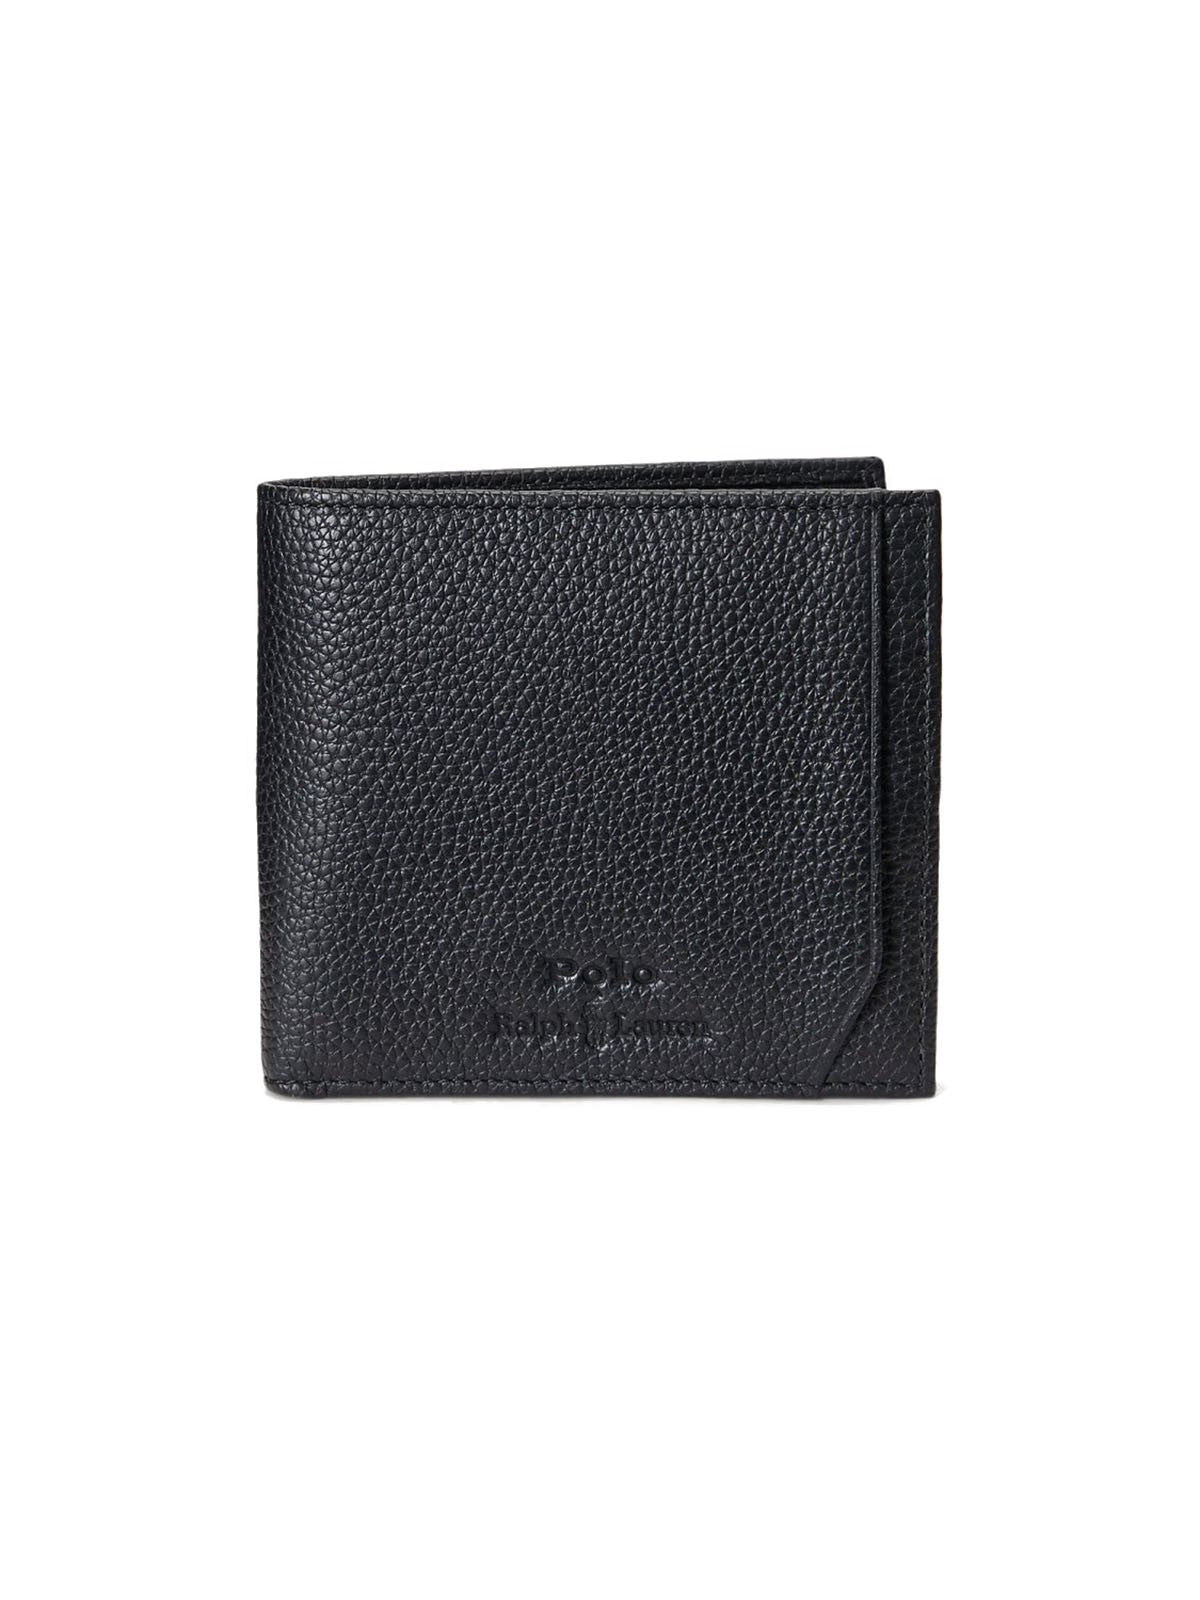 Portafogli Unisex Ralph Lauren - Blfld With Coin Pocket Wallet - Medium - Nero